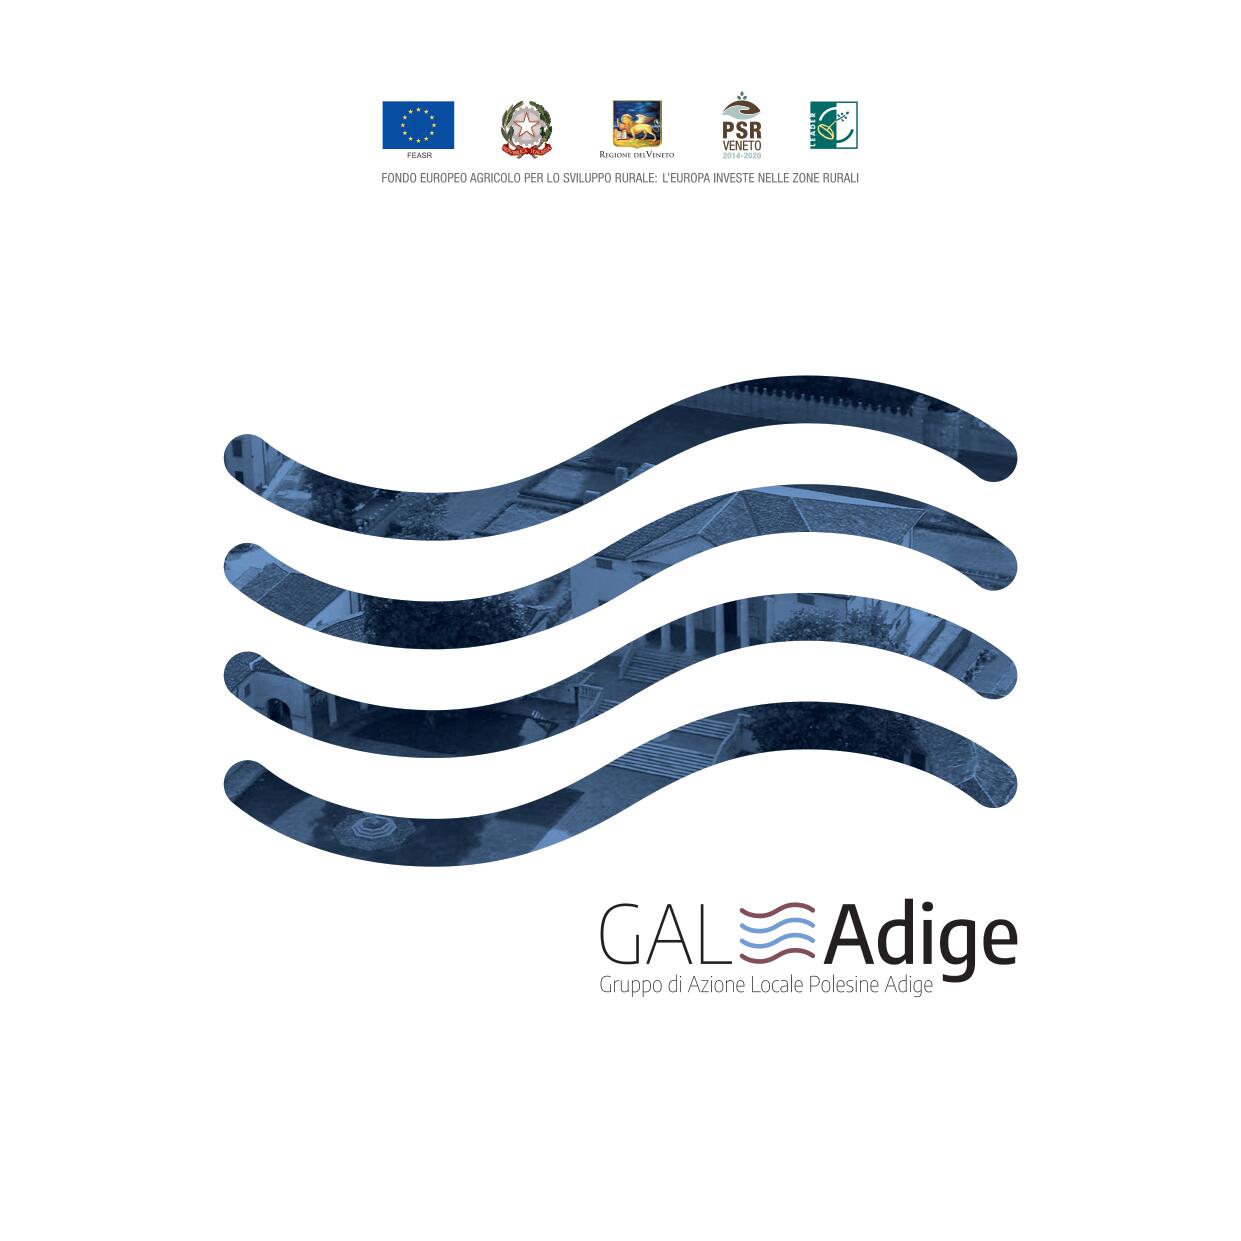 Brochure GAL Adige 